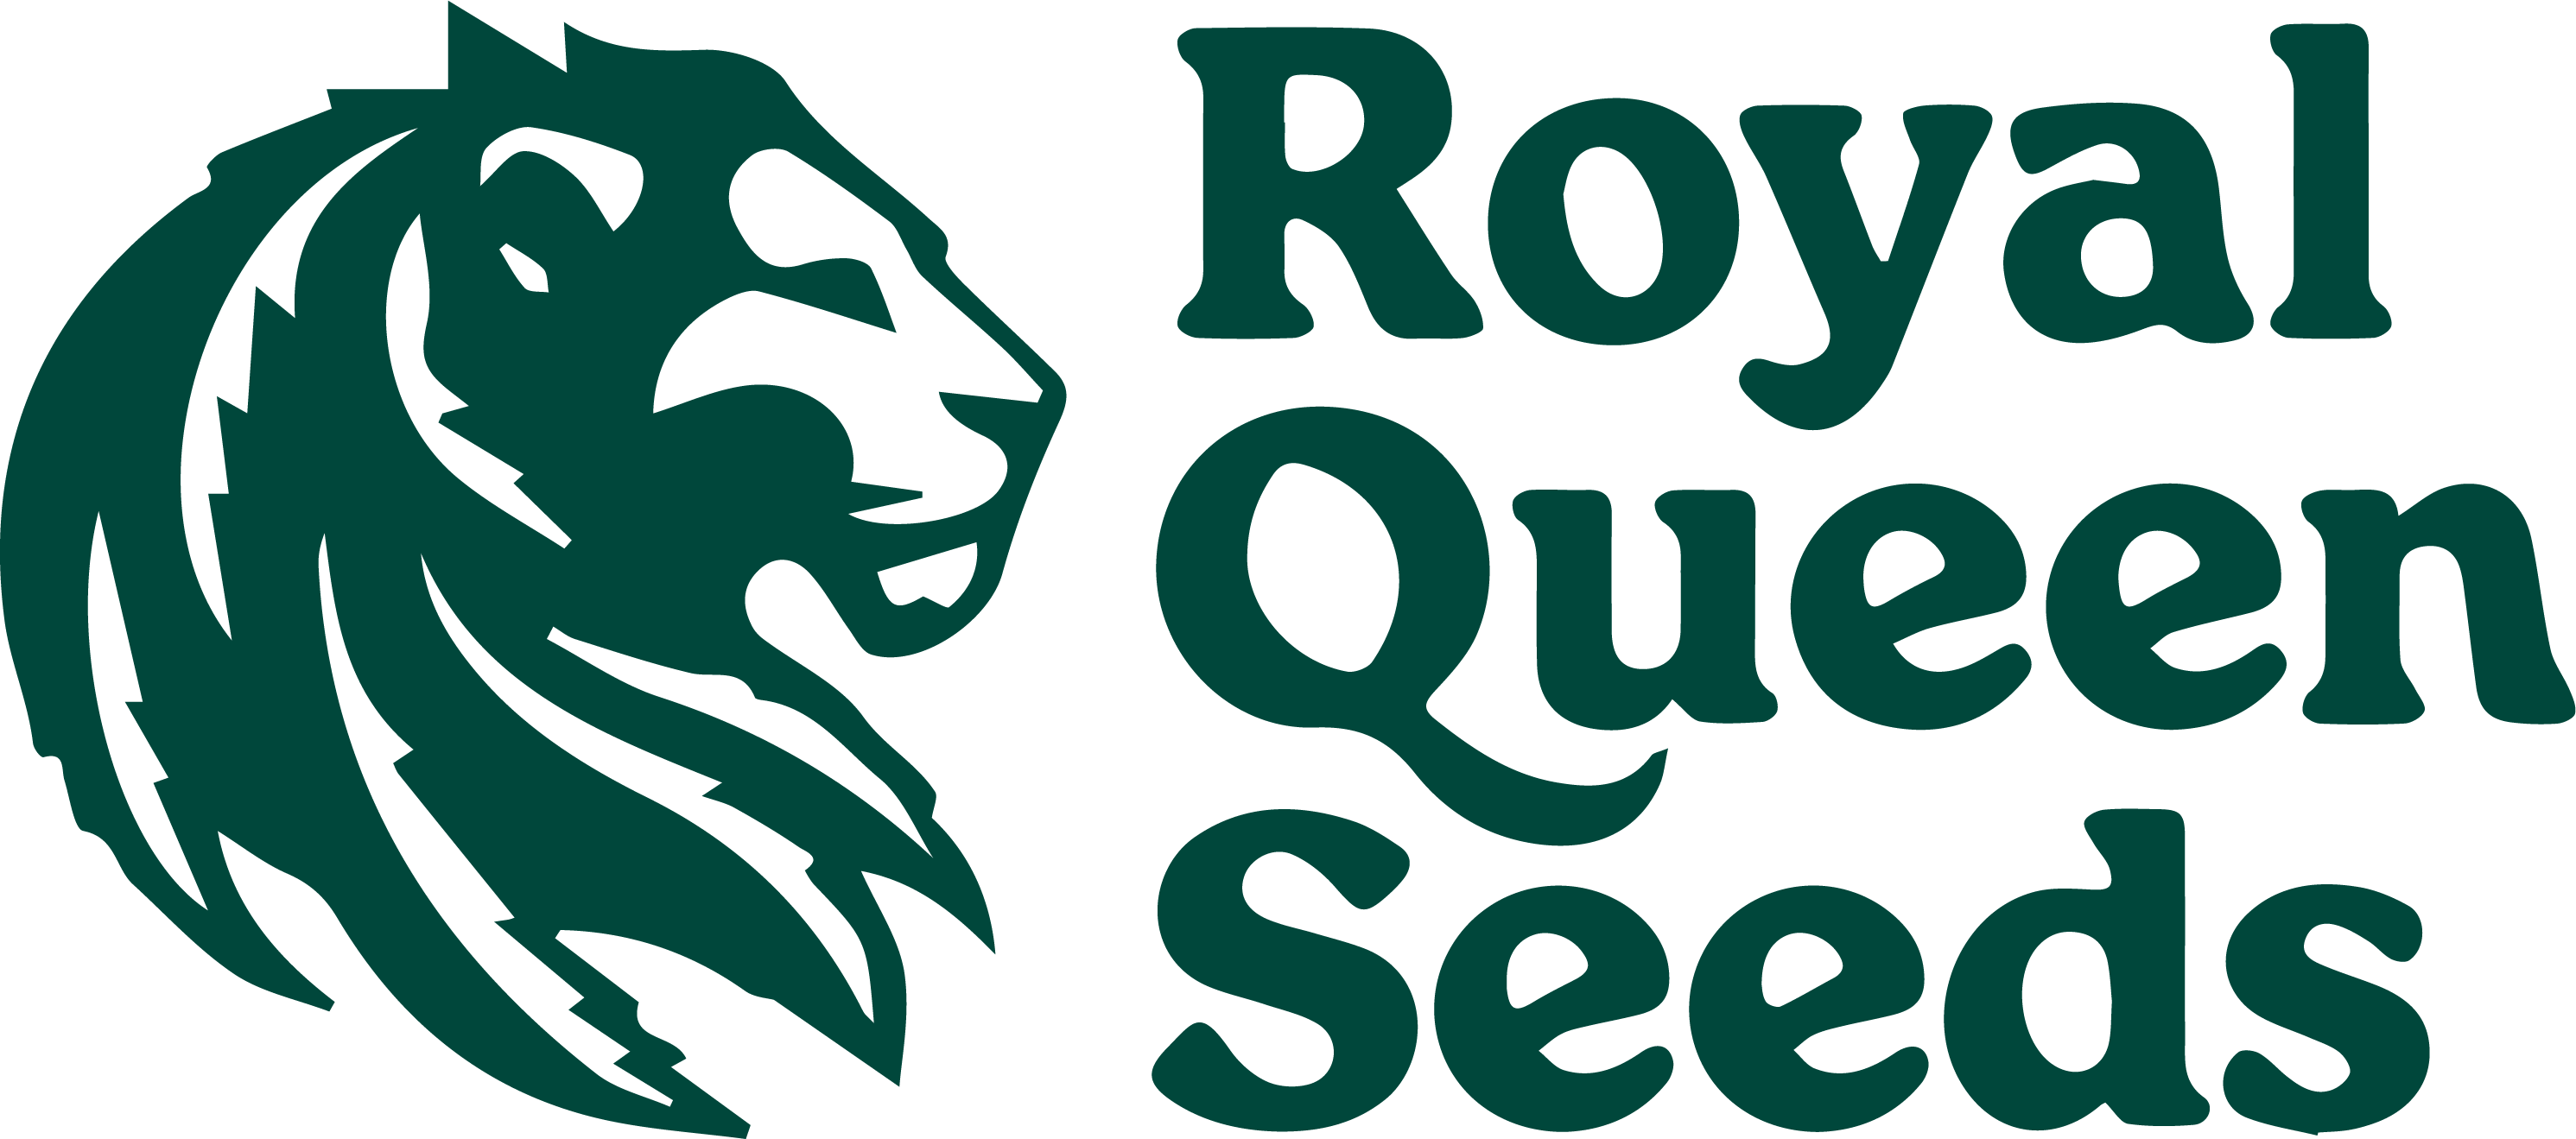 Royal Queen Seeds - Regular cannabis seeds